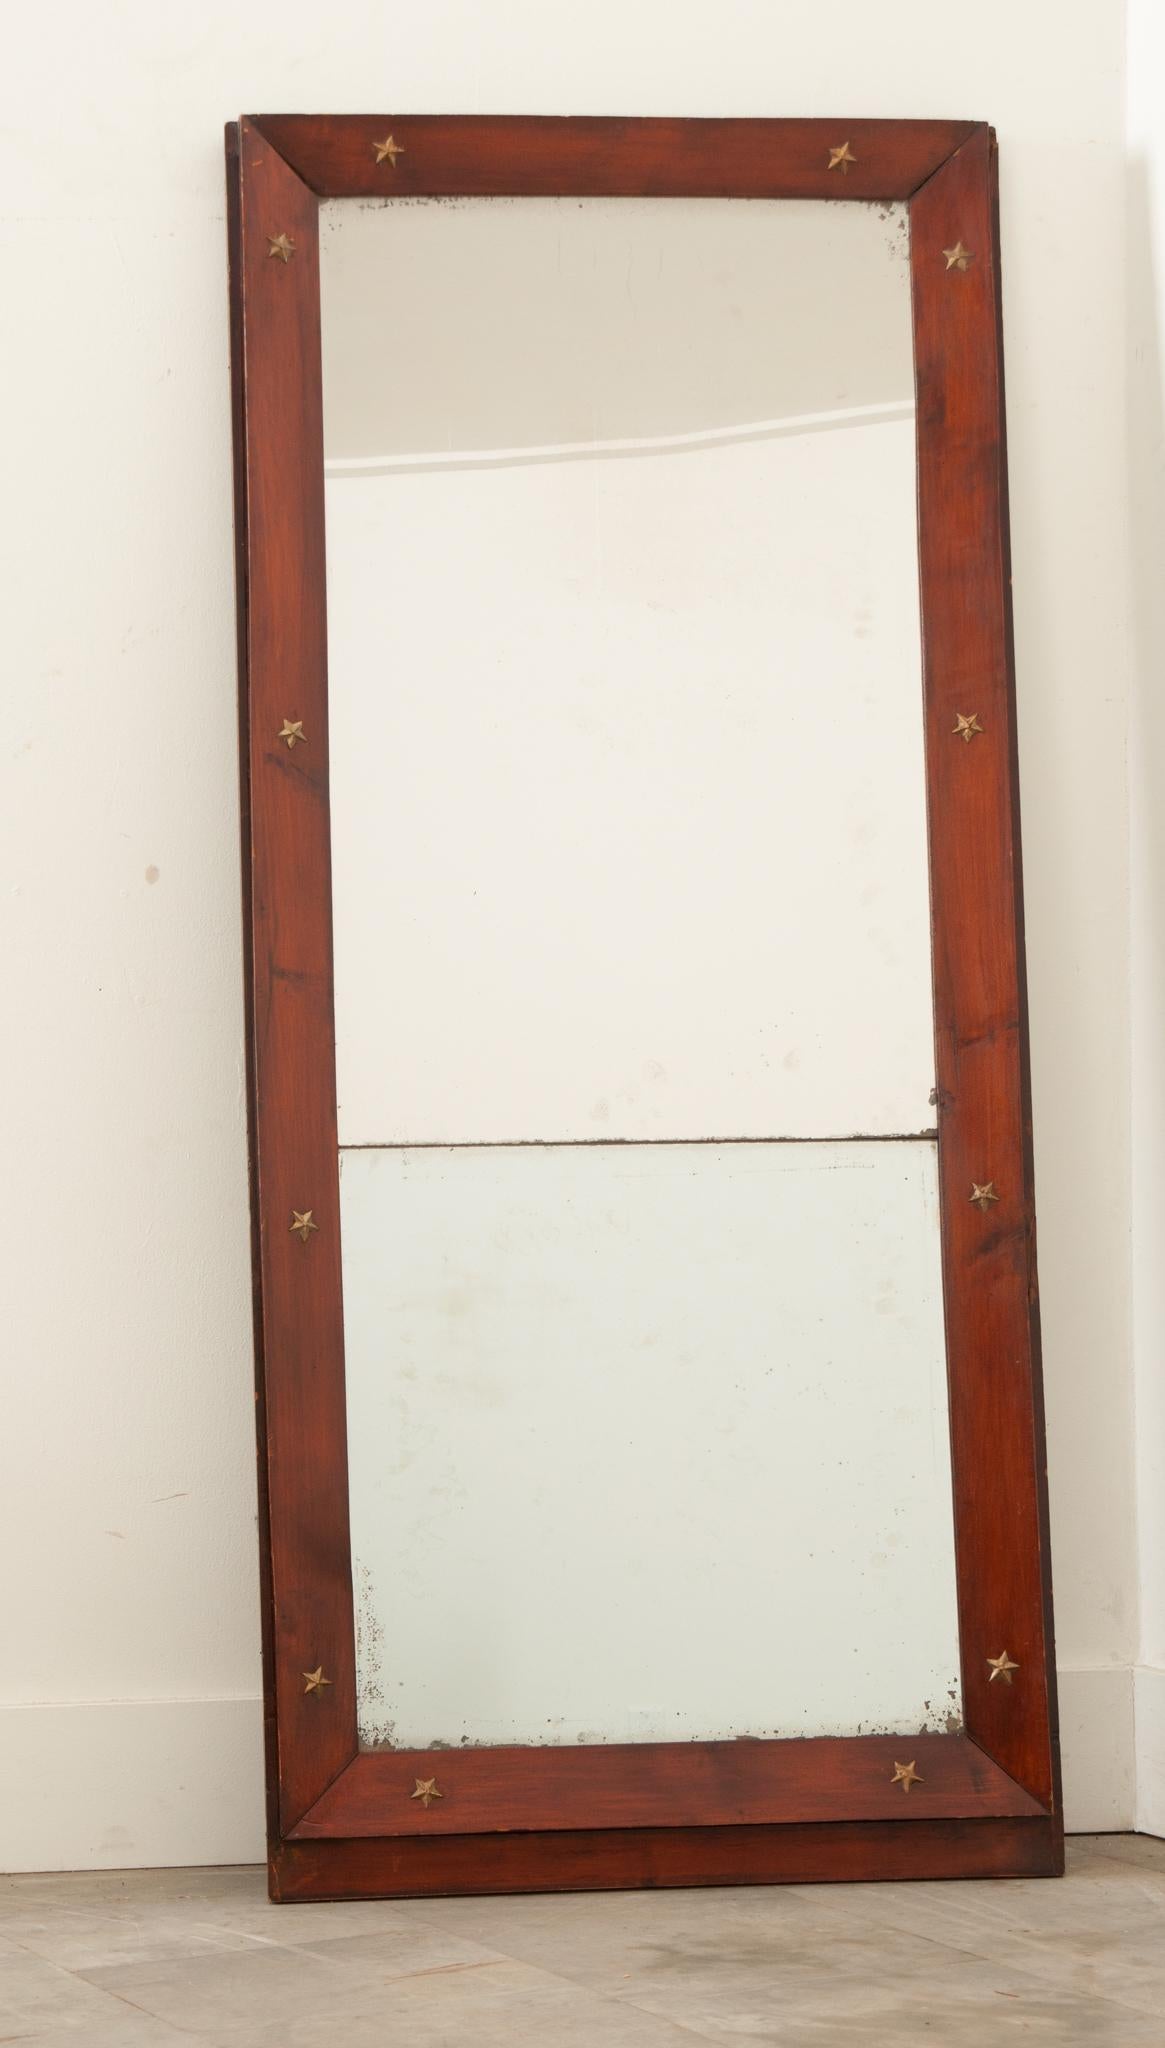 Ein höfischer Empire-Spiegel aus Frankreich mit seiner originalen Spiegelplatte. Der Rahmen besteht aus abgeschrägtem Mahagoni, das mit vergoldeten Bronzesternen verziert ist, ein Motiv, das im Empire-Stil weit verbreitet ist. Dieser Spiegel aus der